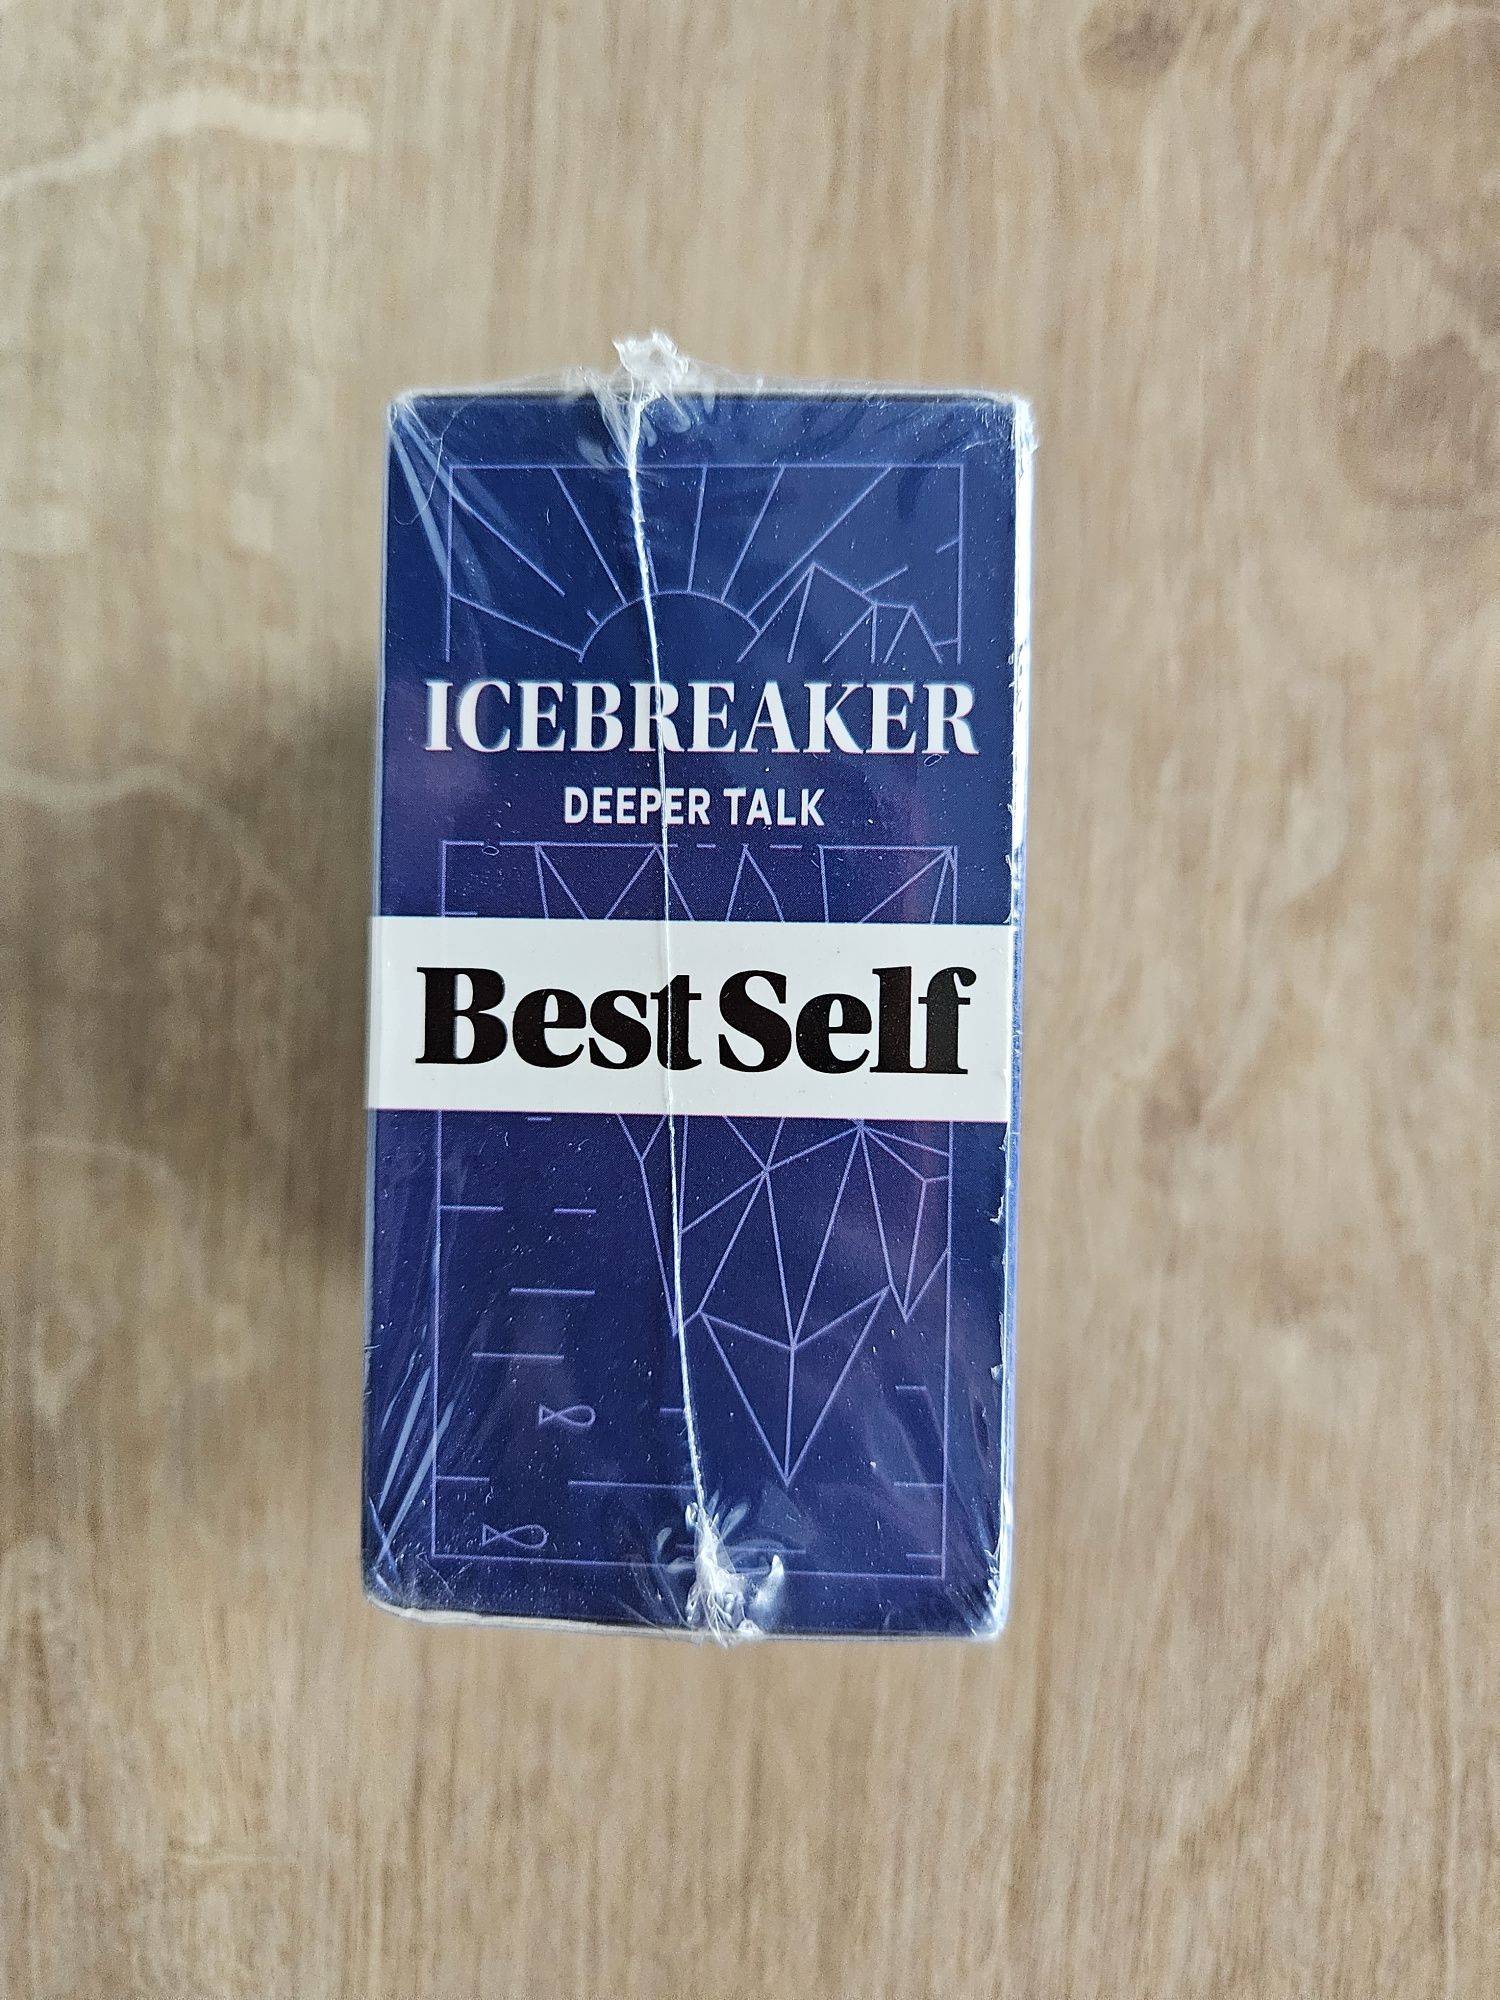 Icebreaker deeper talk Wersja angielska